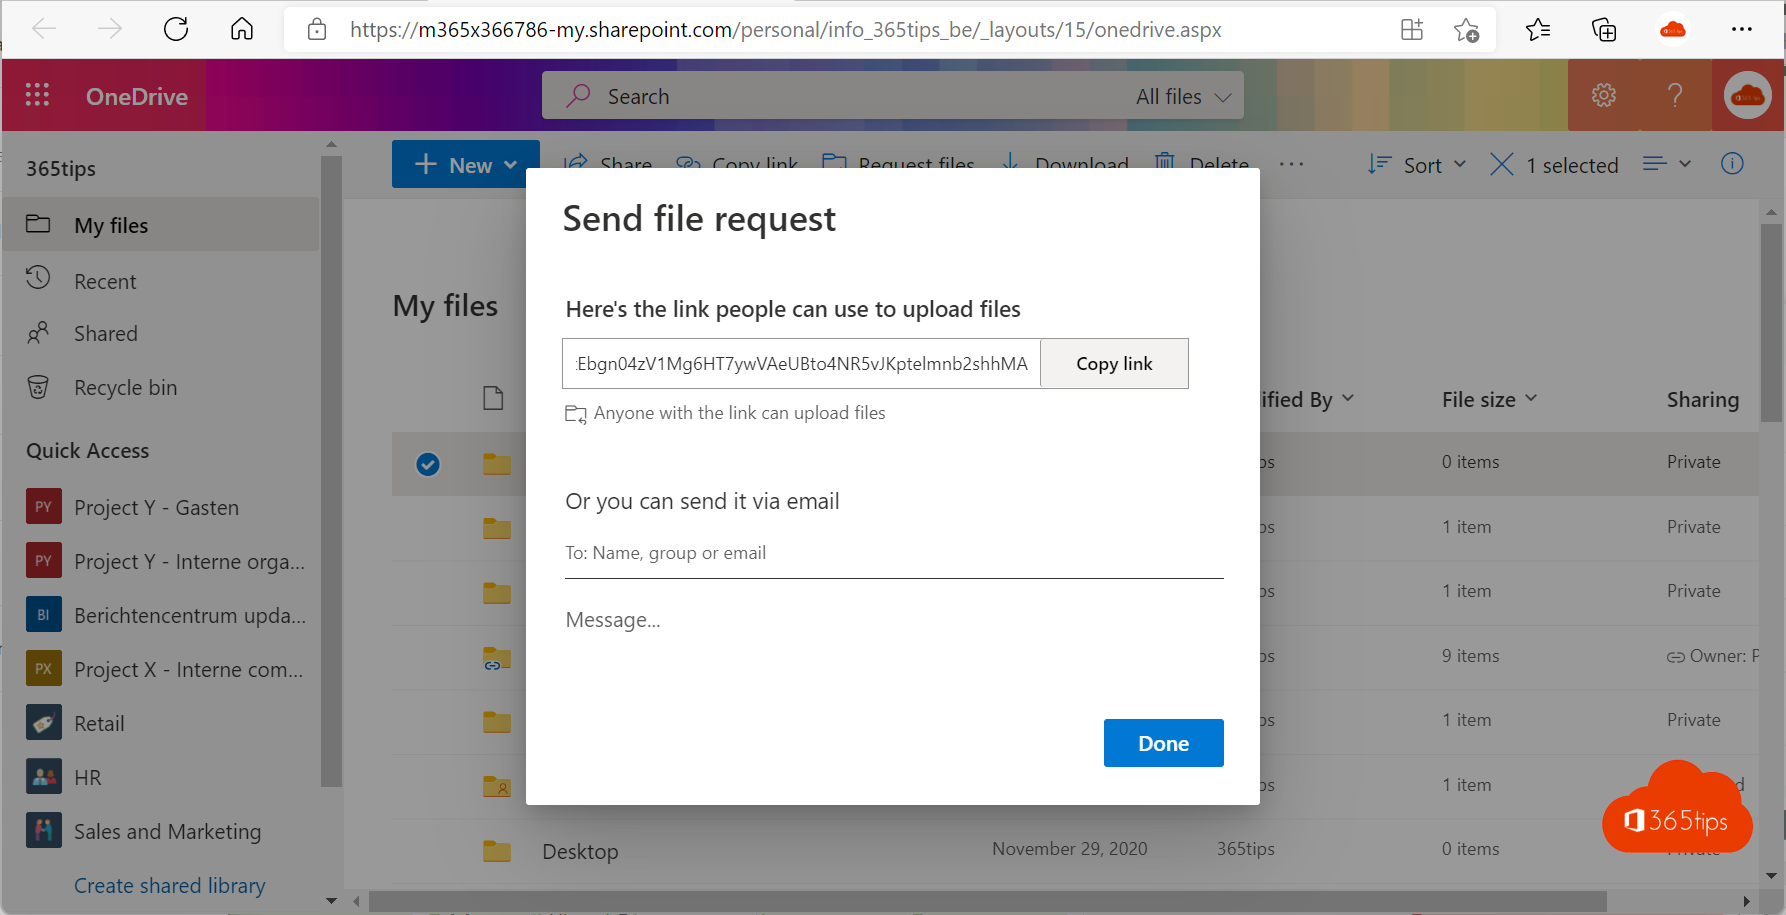 Comment utiliser la demande de fichier dans OneDrive for business ?